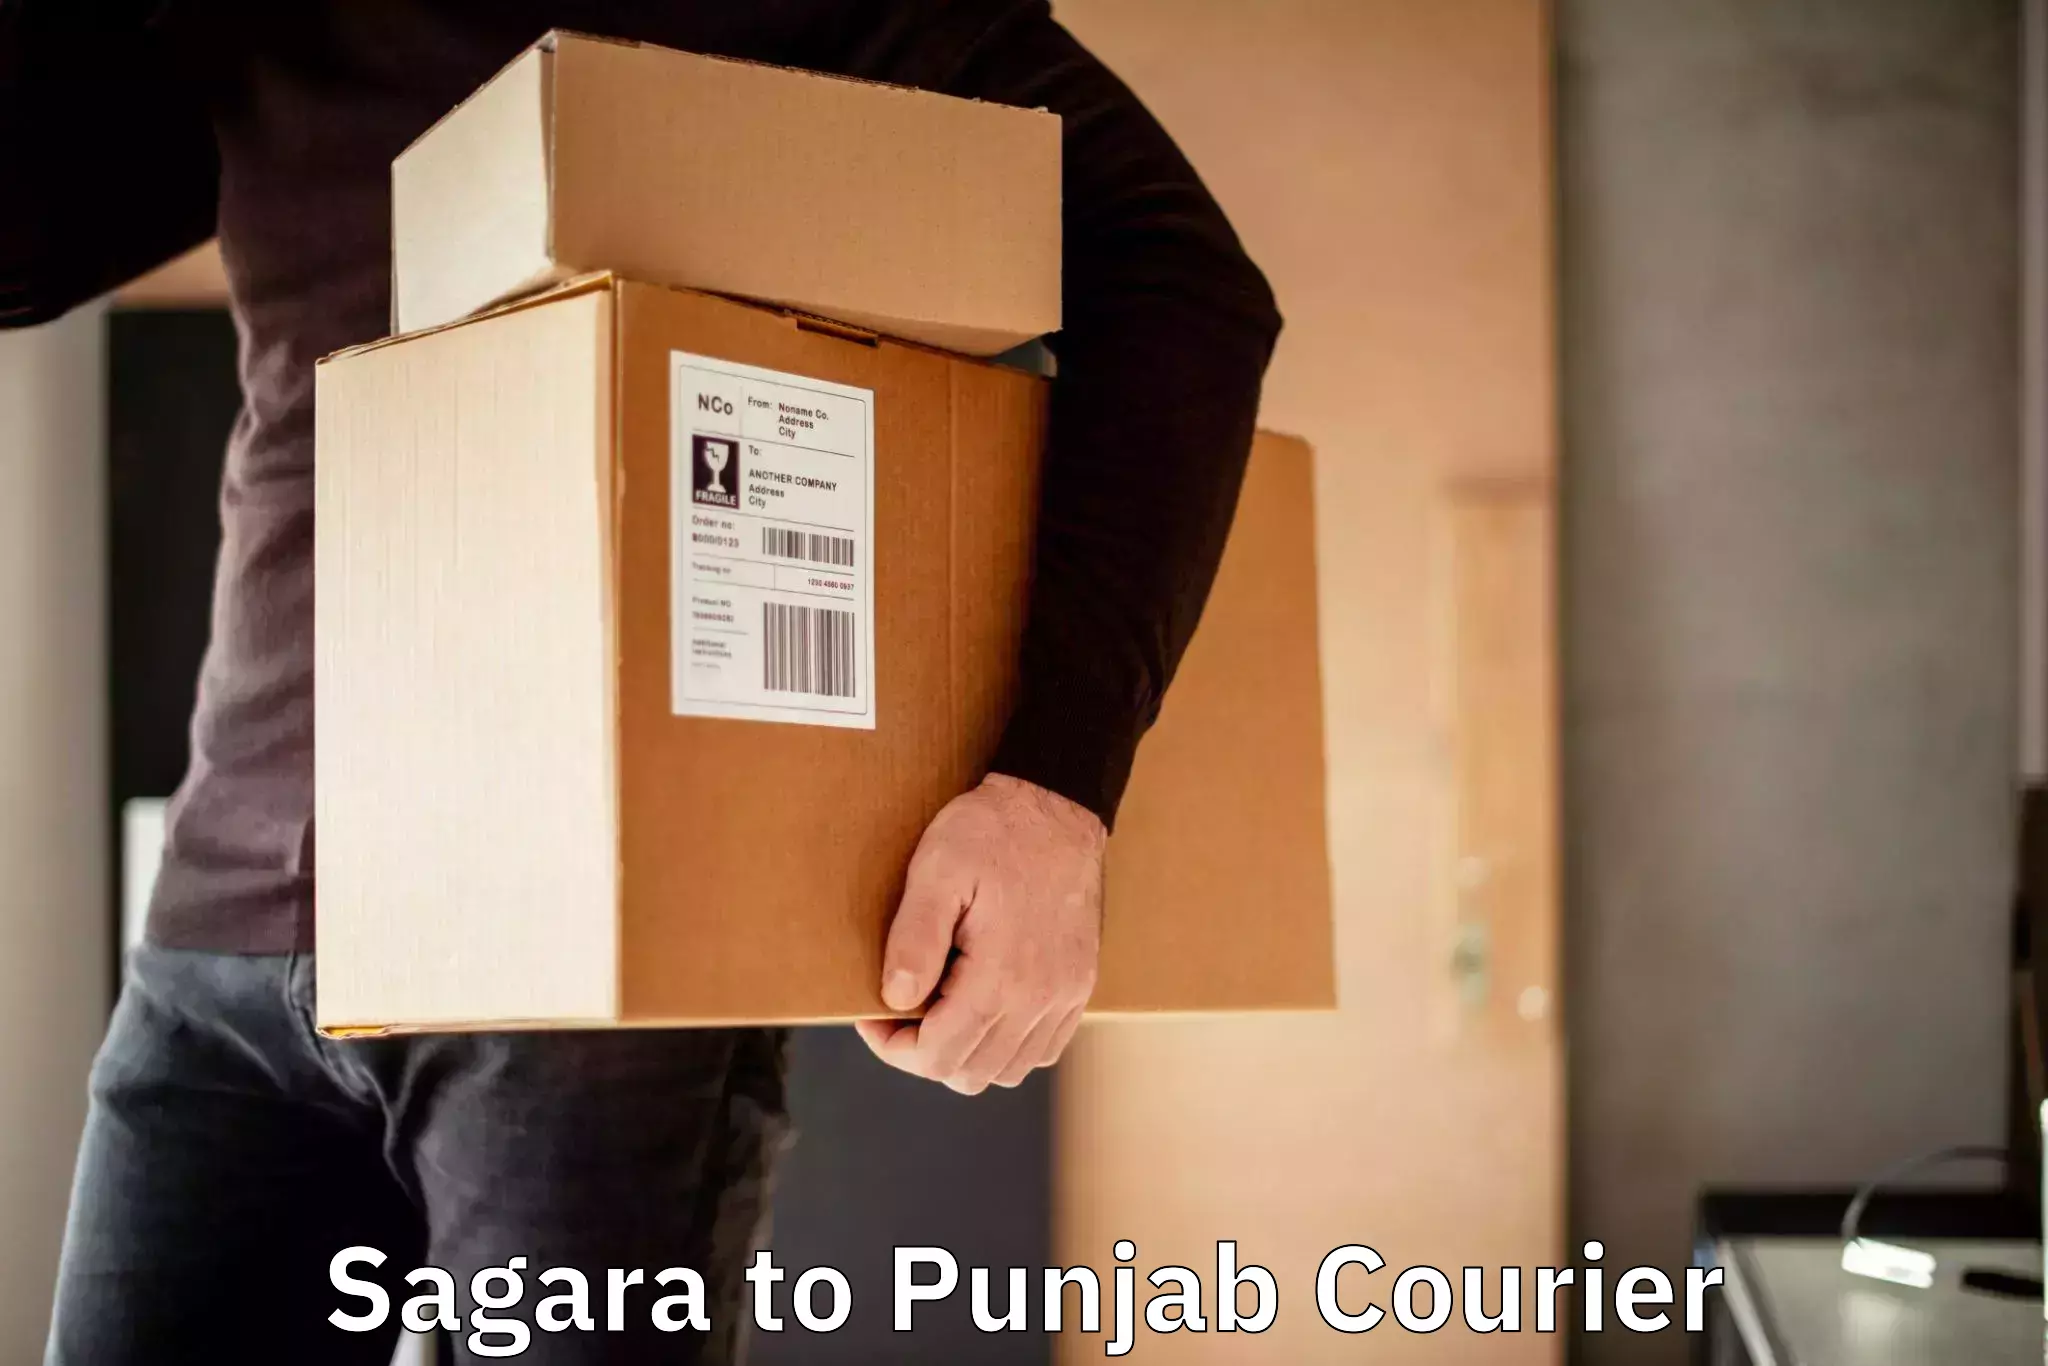 Digital courier platforms Sagara to Punjab